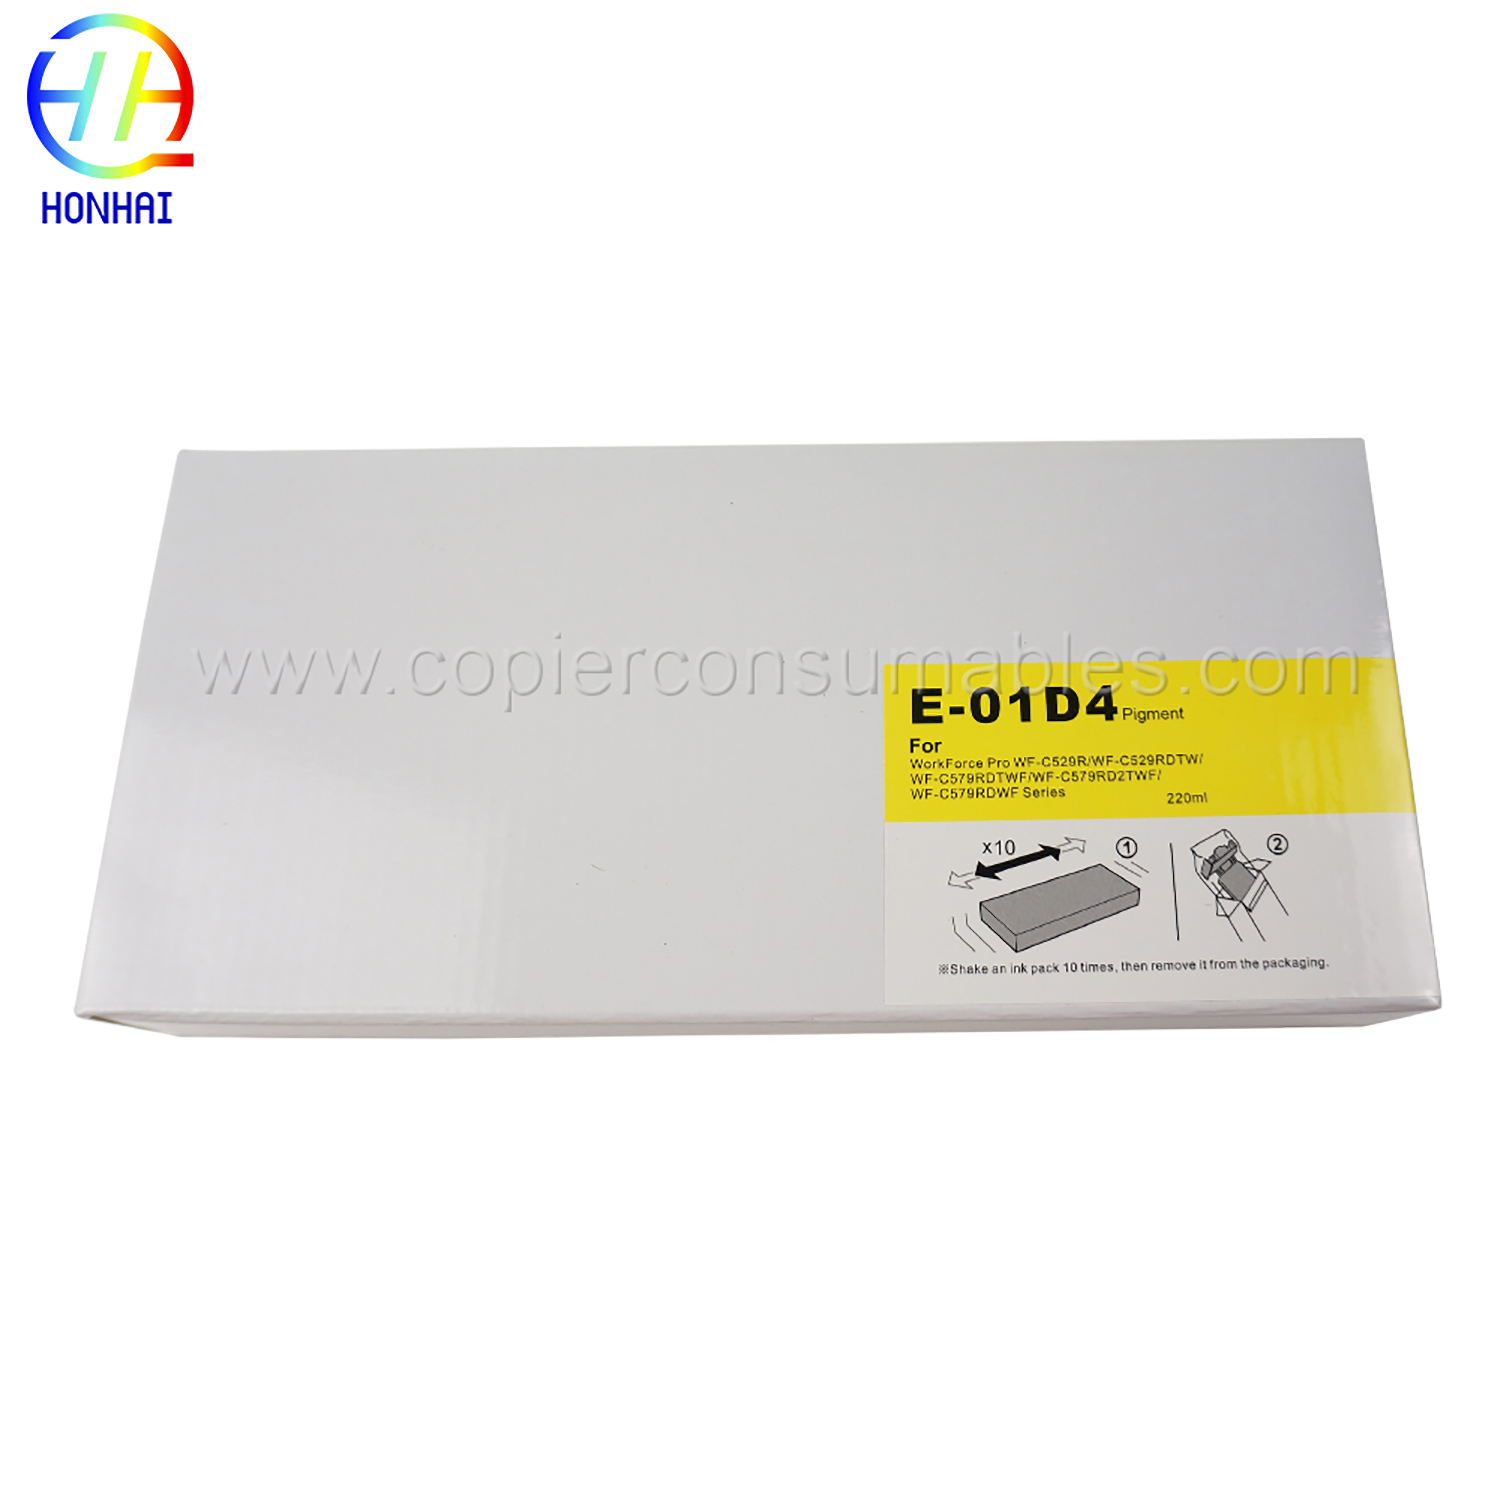 Kantong tinta pikeun Epson WorkForce Pro WF-C529RWF-C529RDTWWF-C579RDTWFWF-C579RD2TWFWF-C579RDWF Series T01D4 (Y) 220 ml (5) 拷贝